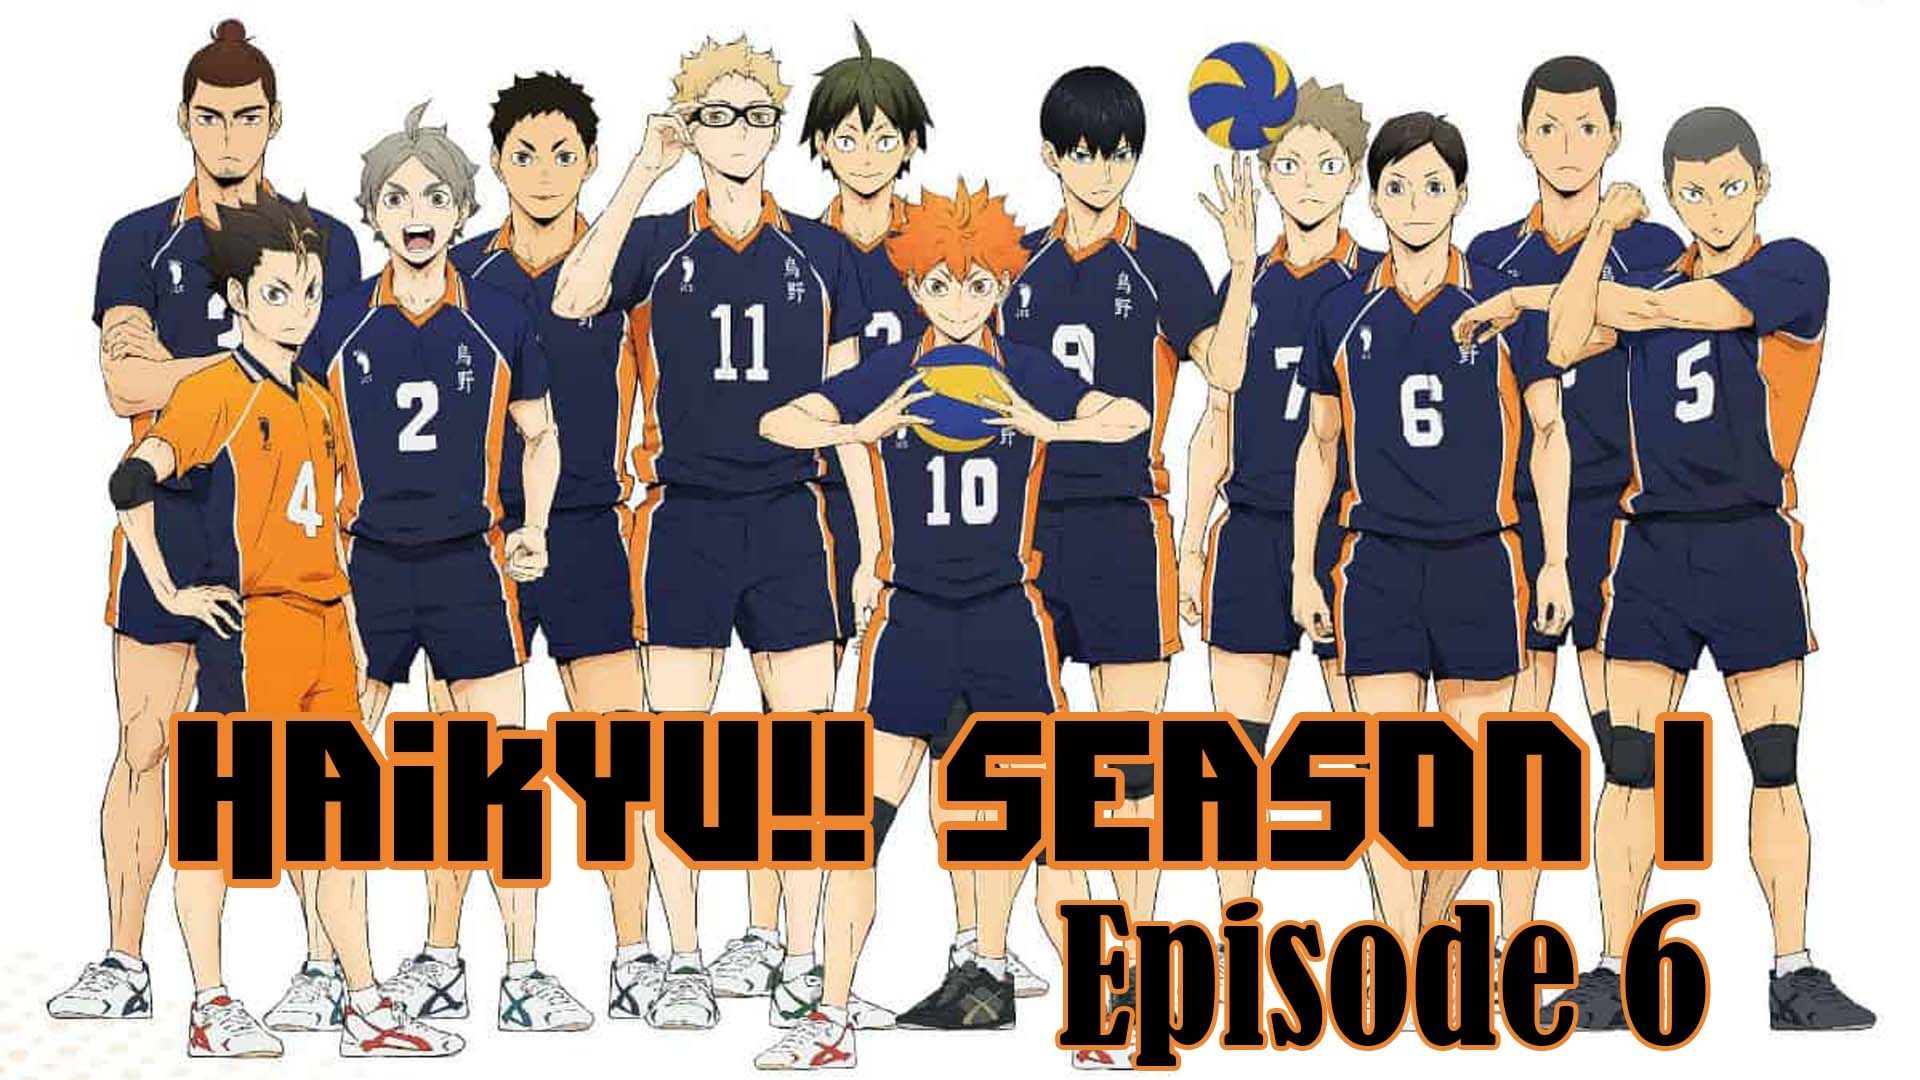 Watch Haikyu!! season 1 episode 1 streaming online